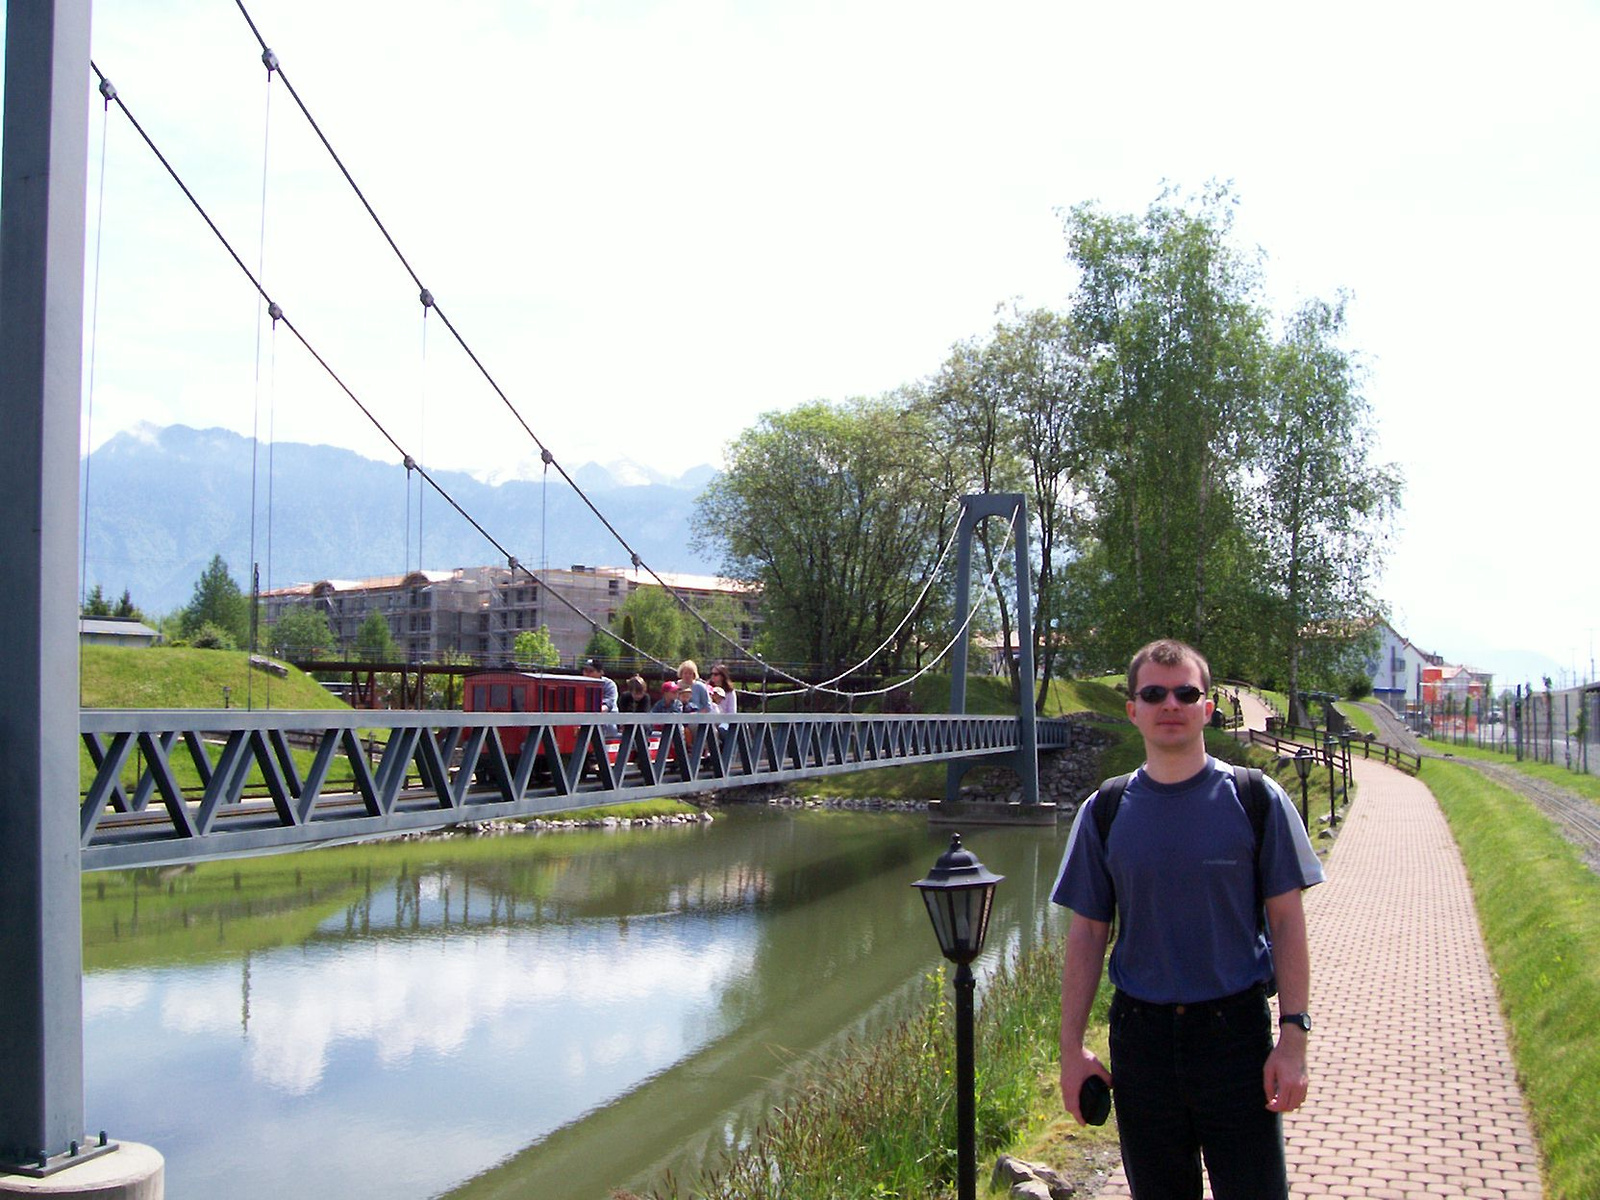 Swiss Vapeur Parc - híd